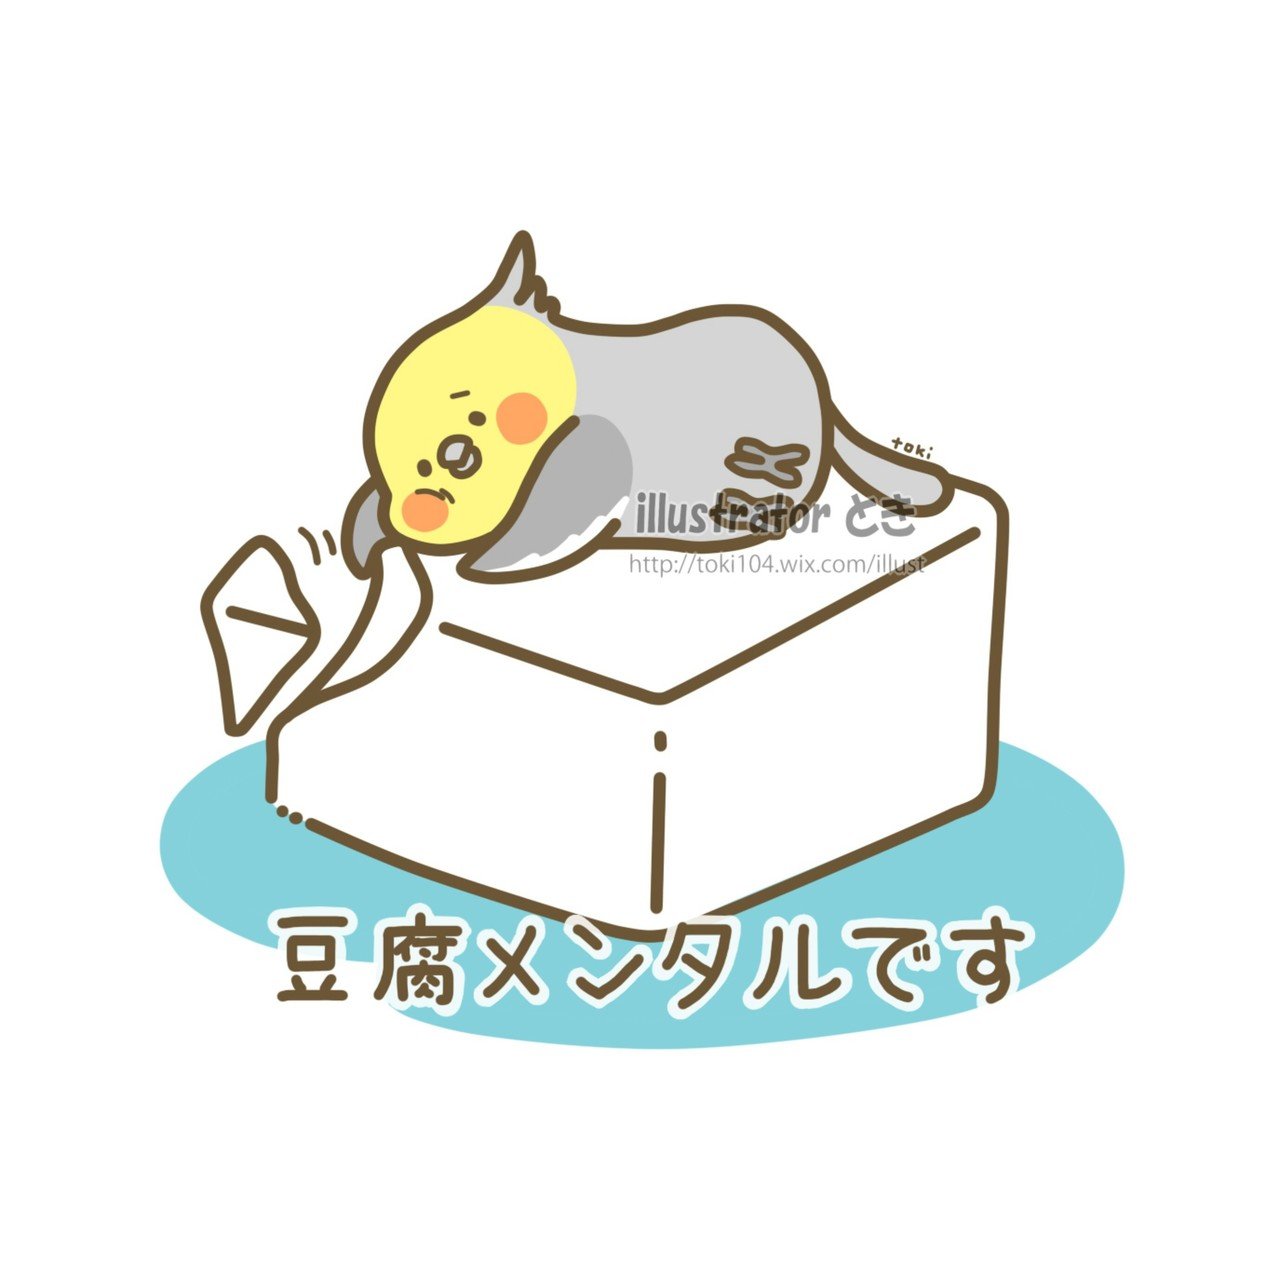 豆腐メンタル とき 10 24 25鳥フェス大阪 Note